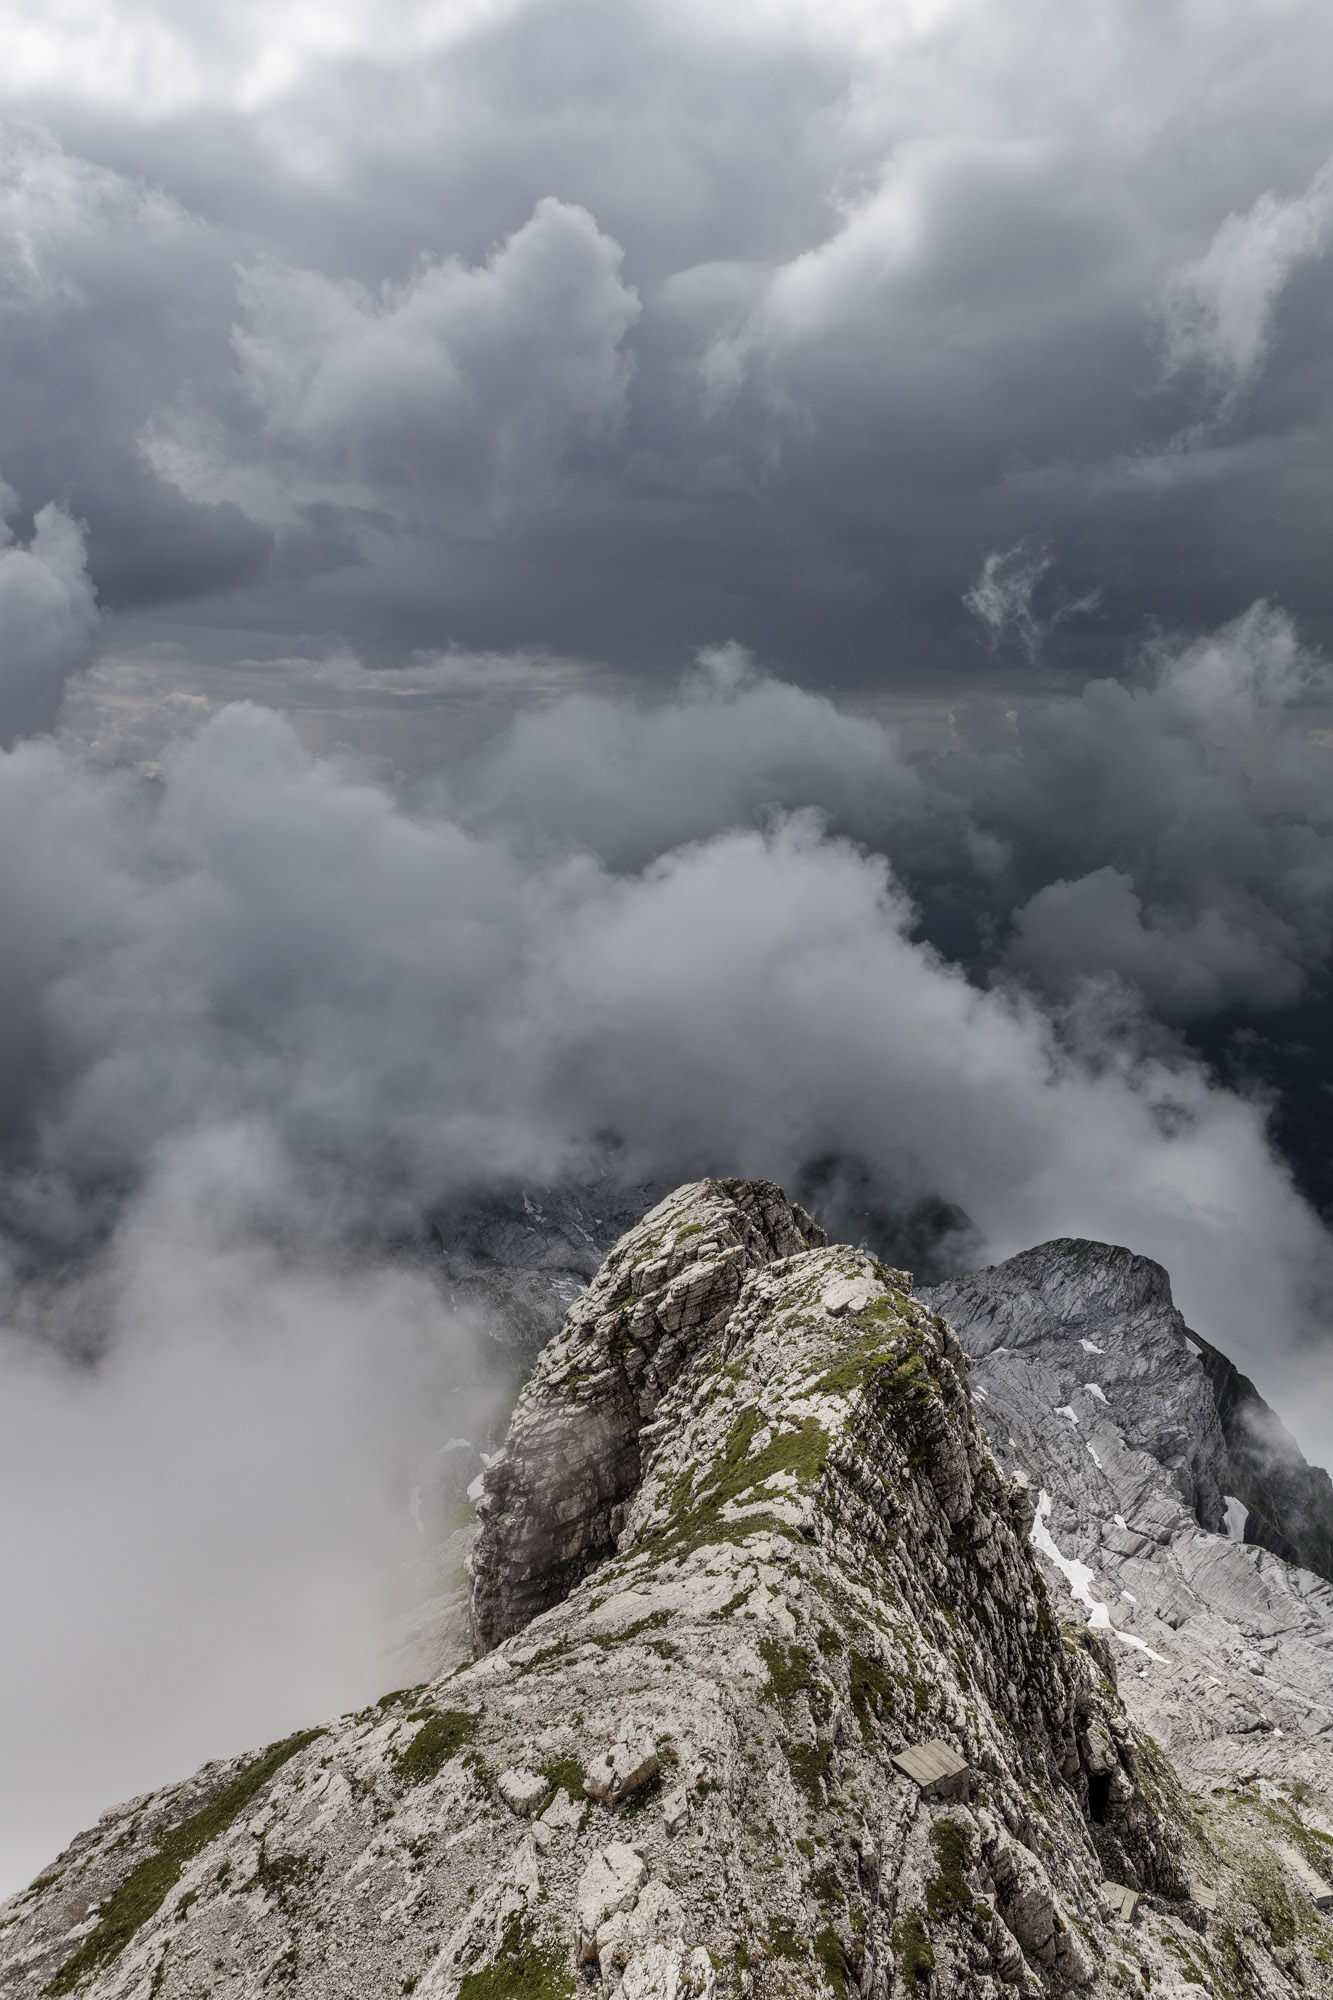 Alpen, Alpstein, Clouds, Gipfel, Schweiz, Suisse, Switzerland, Säntis, Wolken